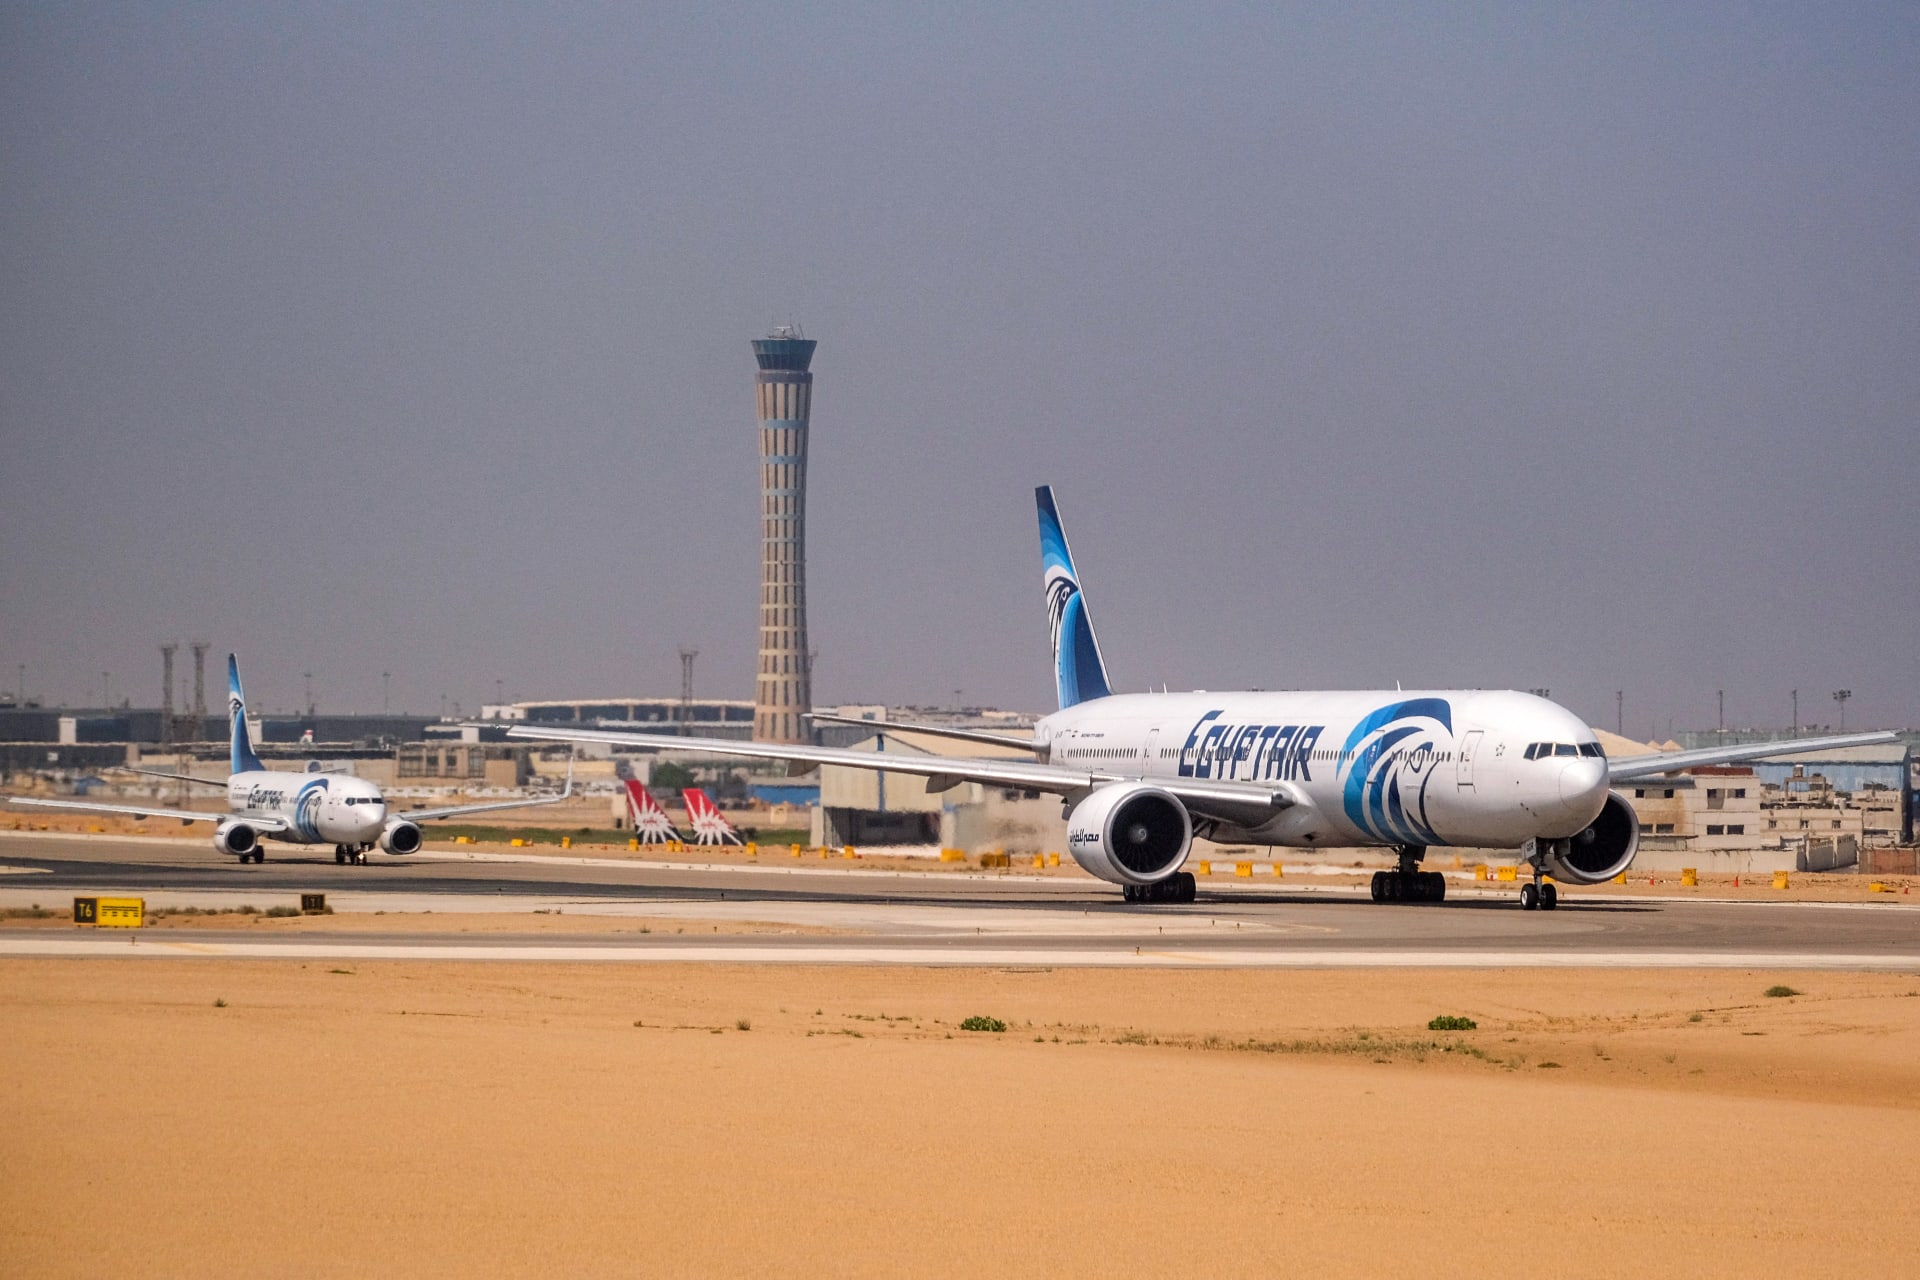 بعد فيديو مثير للجدل..مصر للطيران تكشف حقيقة حجز تذاكرها بالدولار